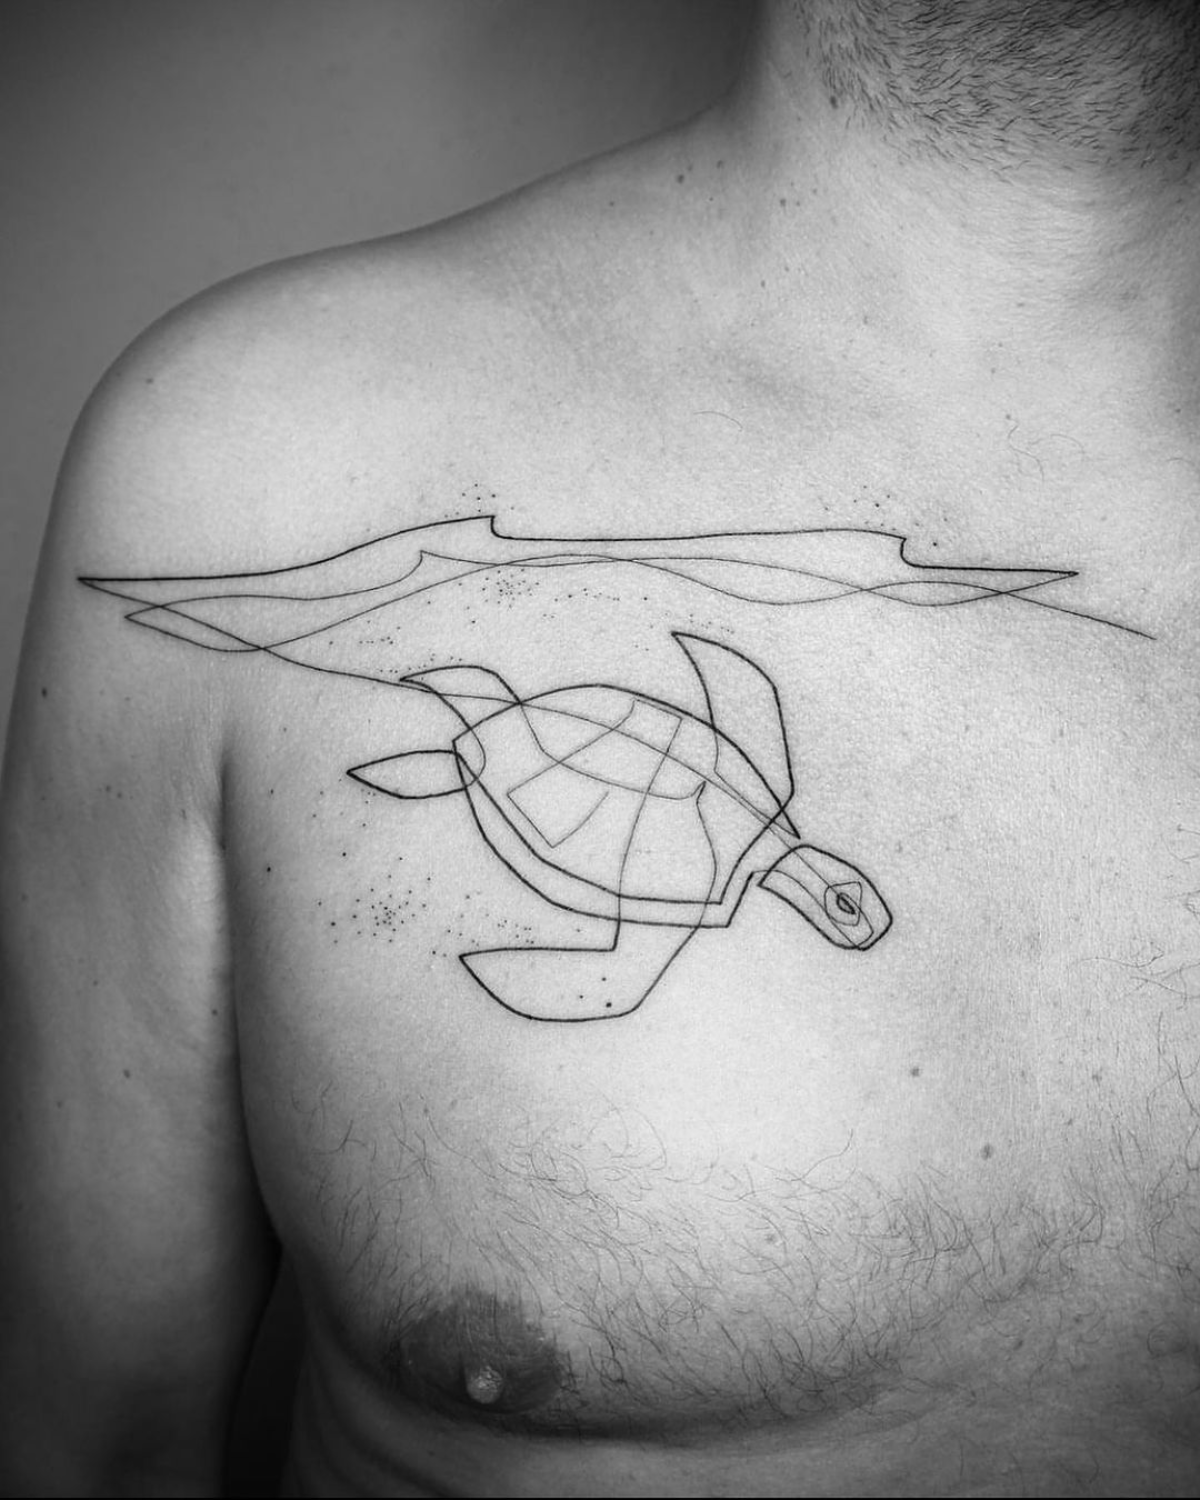 großes one line tattoo mit schildkröte